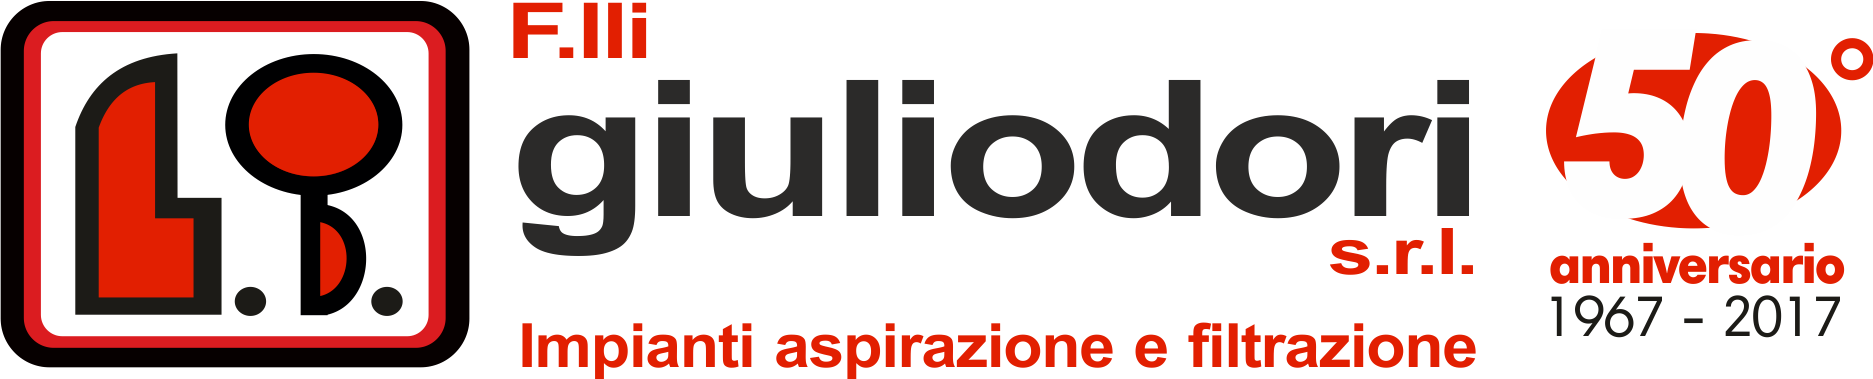 F.lli Giuliodori